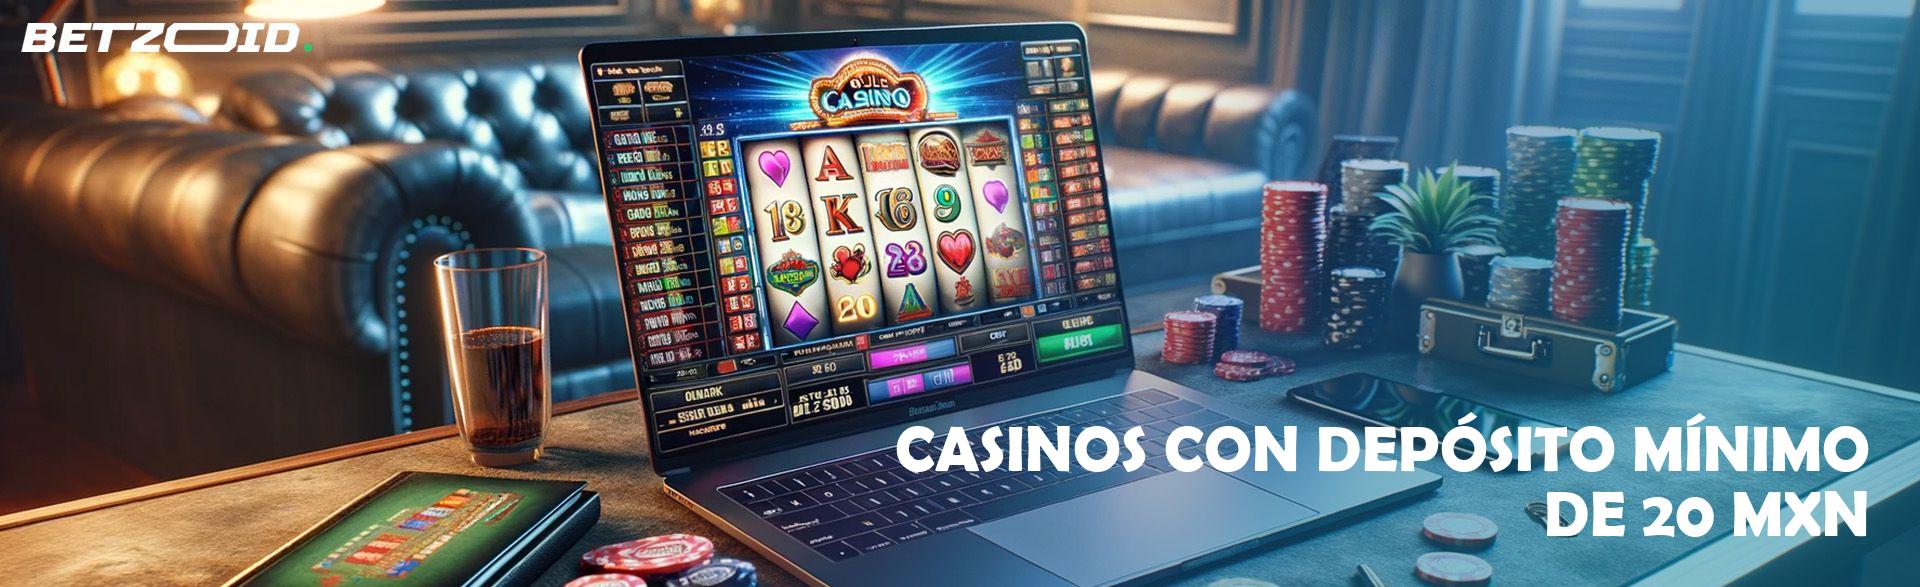 Casinos con Depósito Mínimo de 20 MXN.